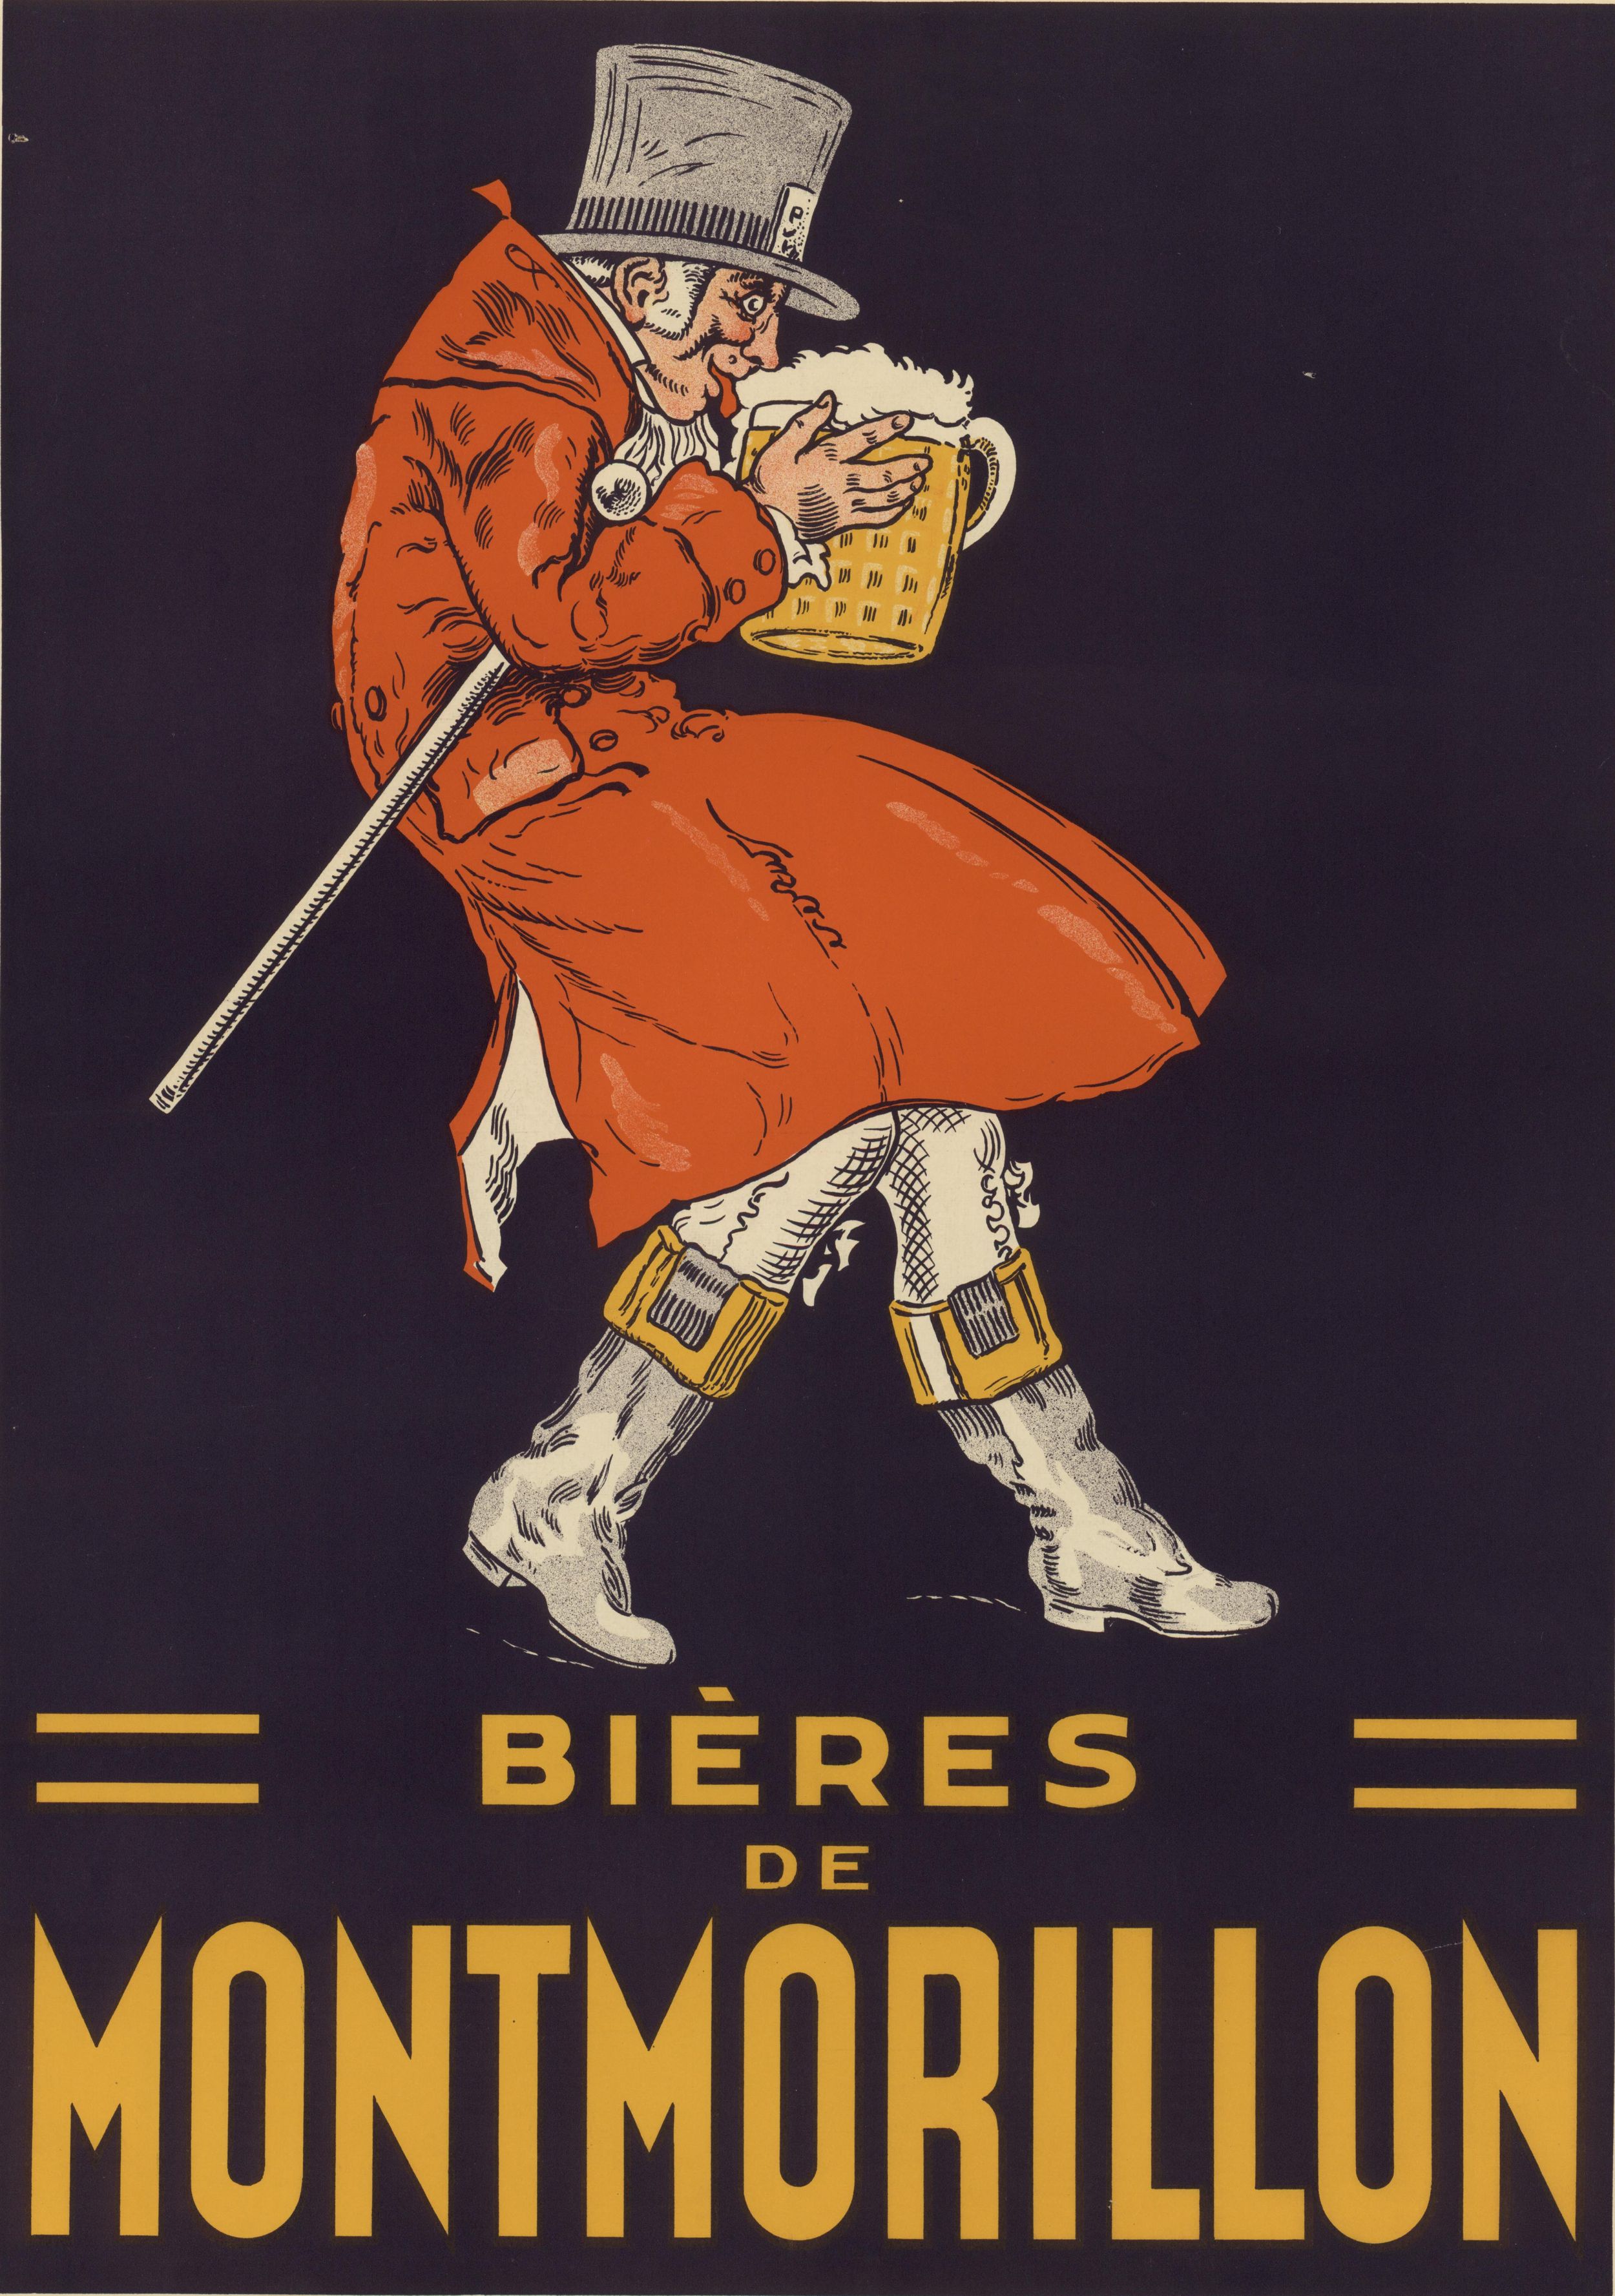 Bières de Montmorillon : affiche publicitaire couleur (1900, cote : 2FI/1499)